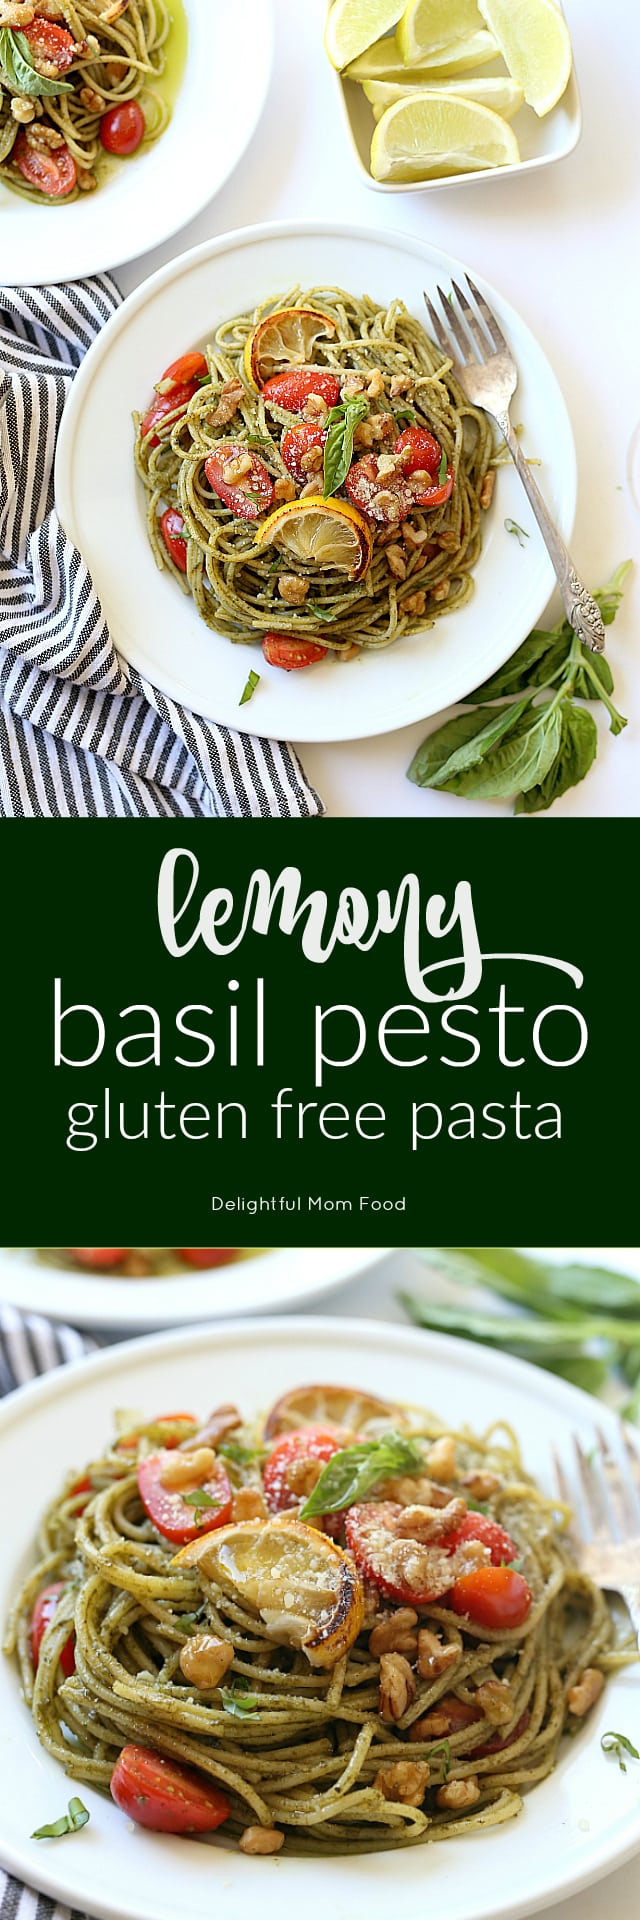 Lemony Basil Pesto Pasta Recipe